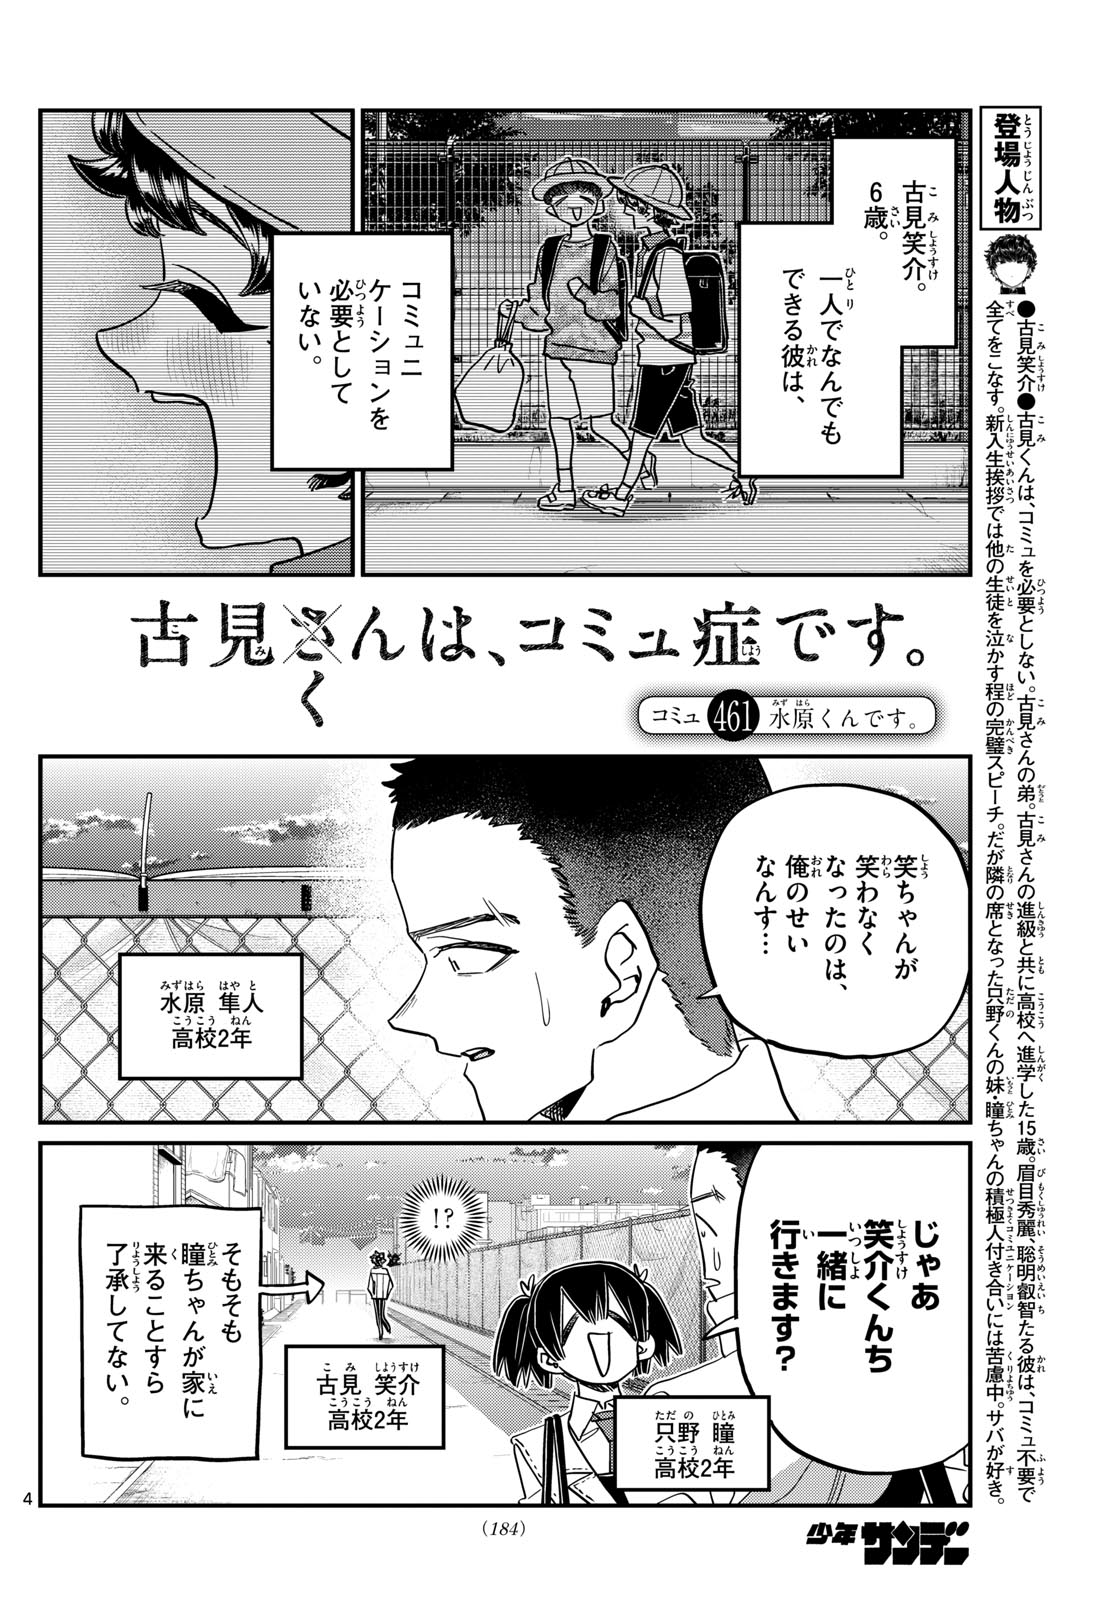 Komi-san wa Komyushou Desu - Chapter 461 - Page 4